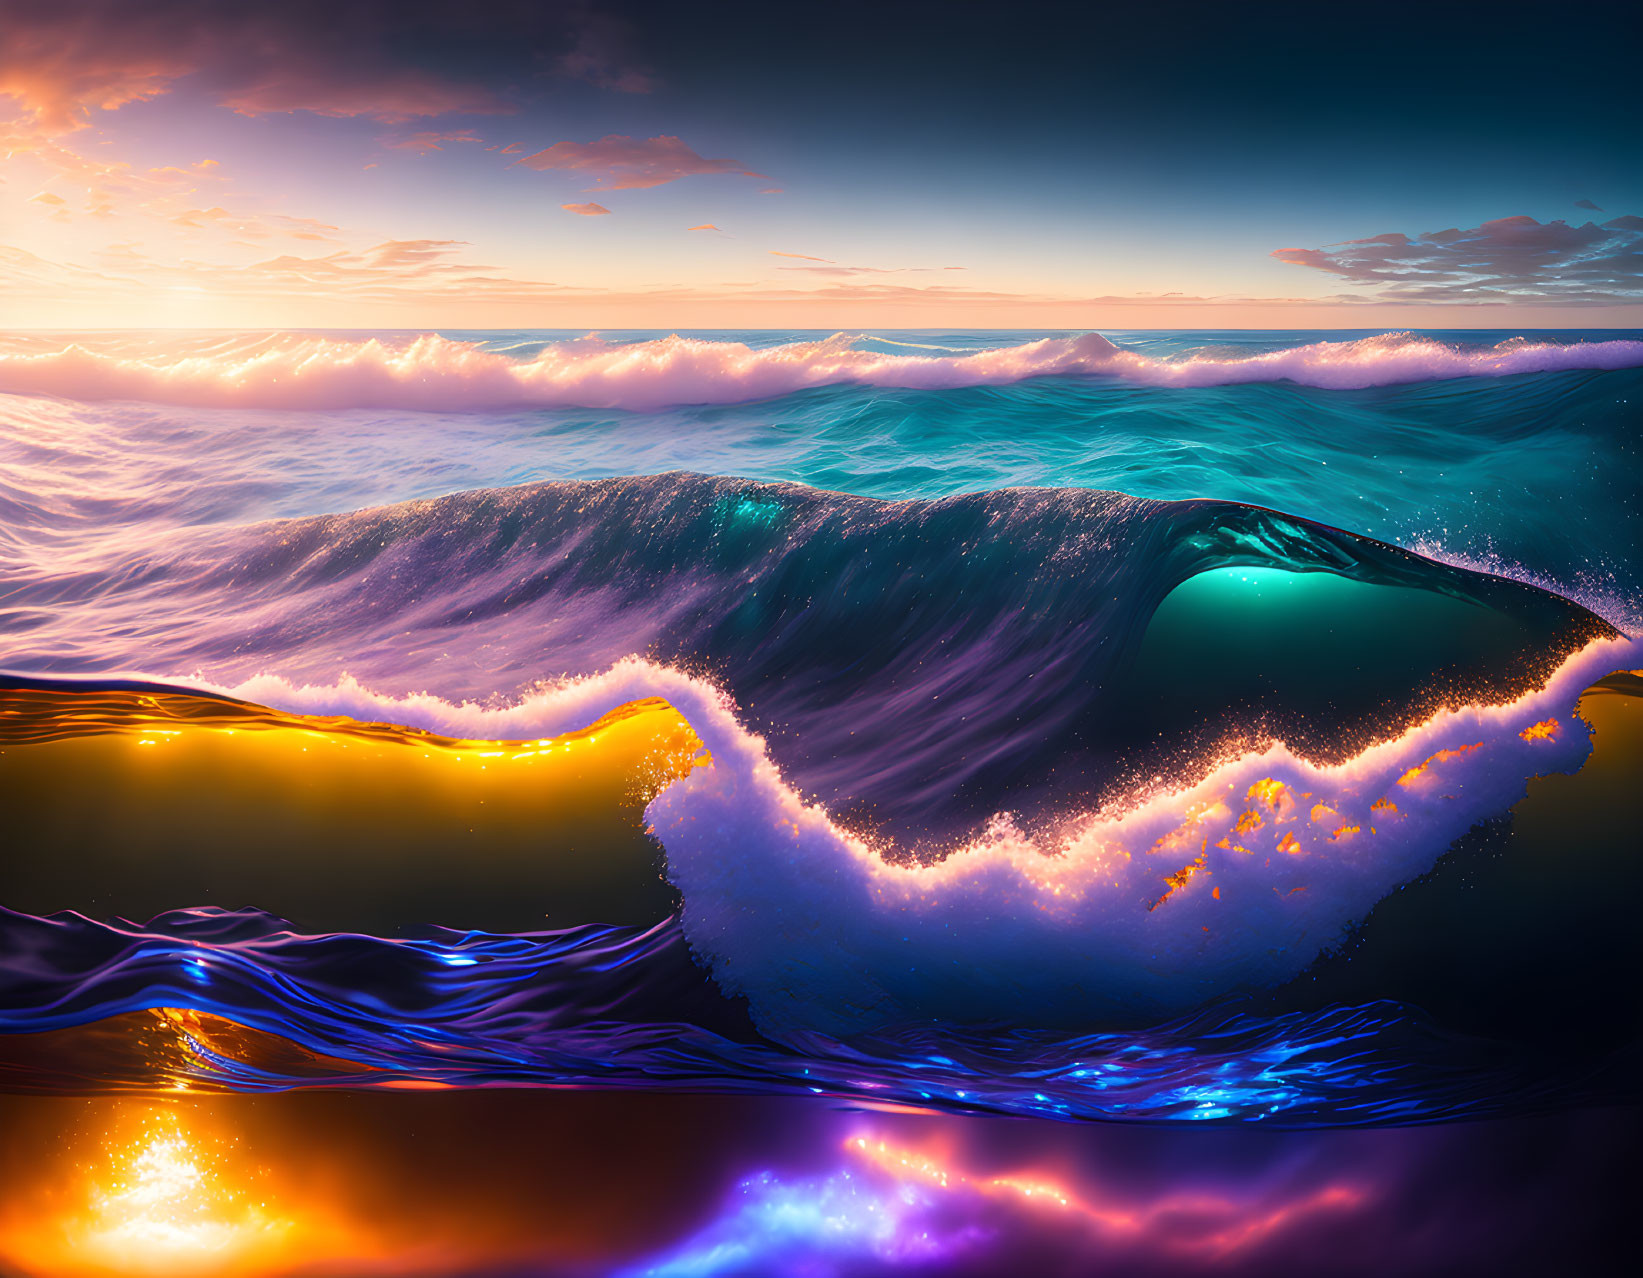 Colorful digital artwork: Large ocean wave under sunset sky